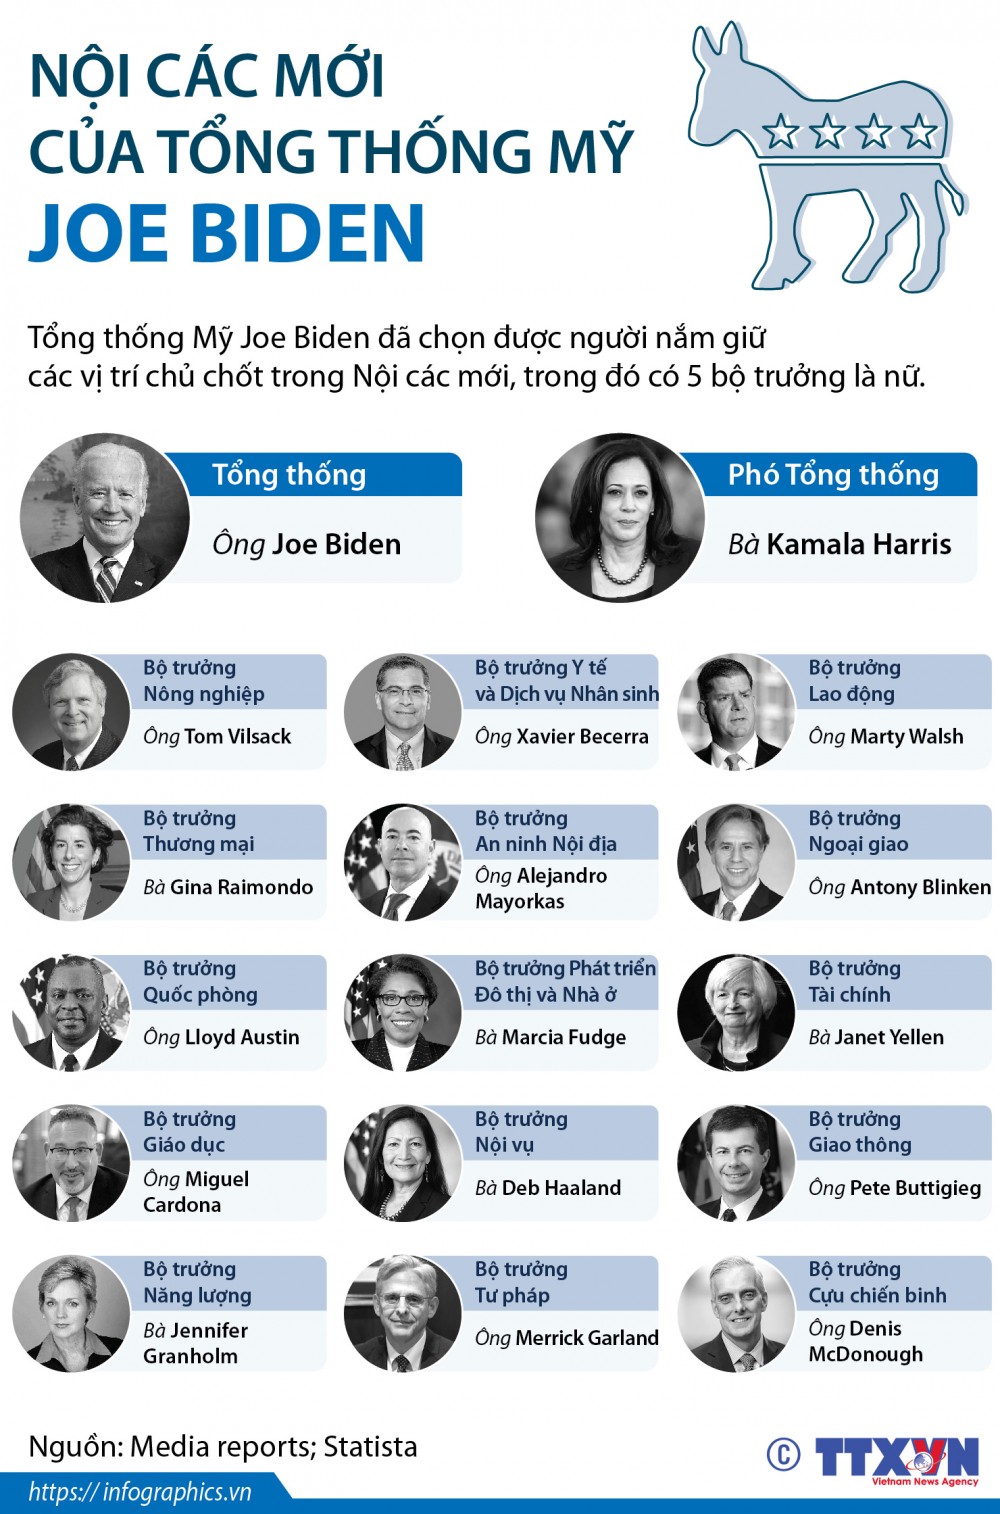 Năm bộ trưởng nữ trong nội các của Tổng thống Mỹ Joe Biden